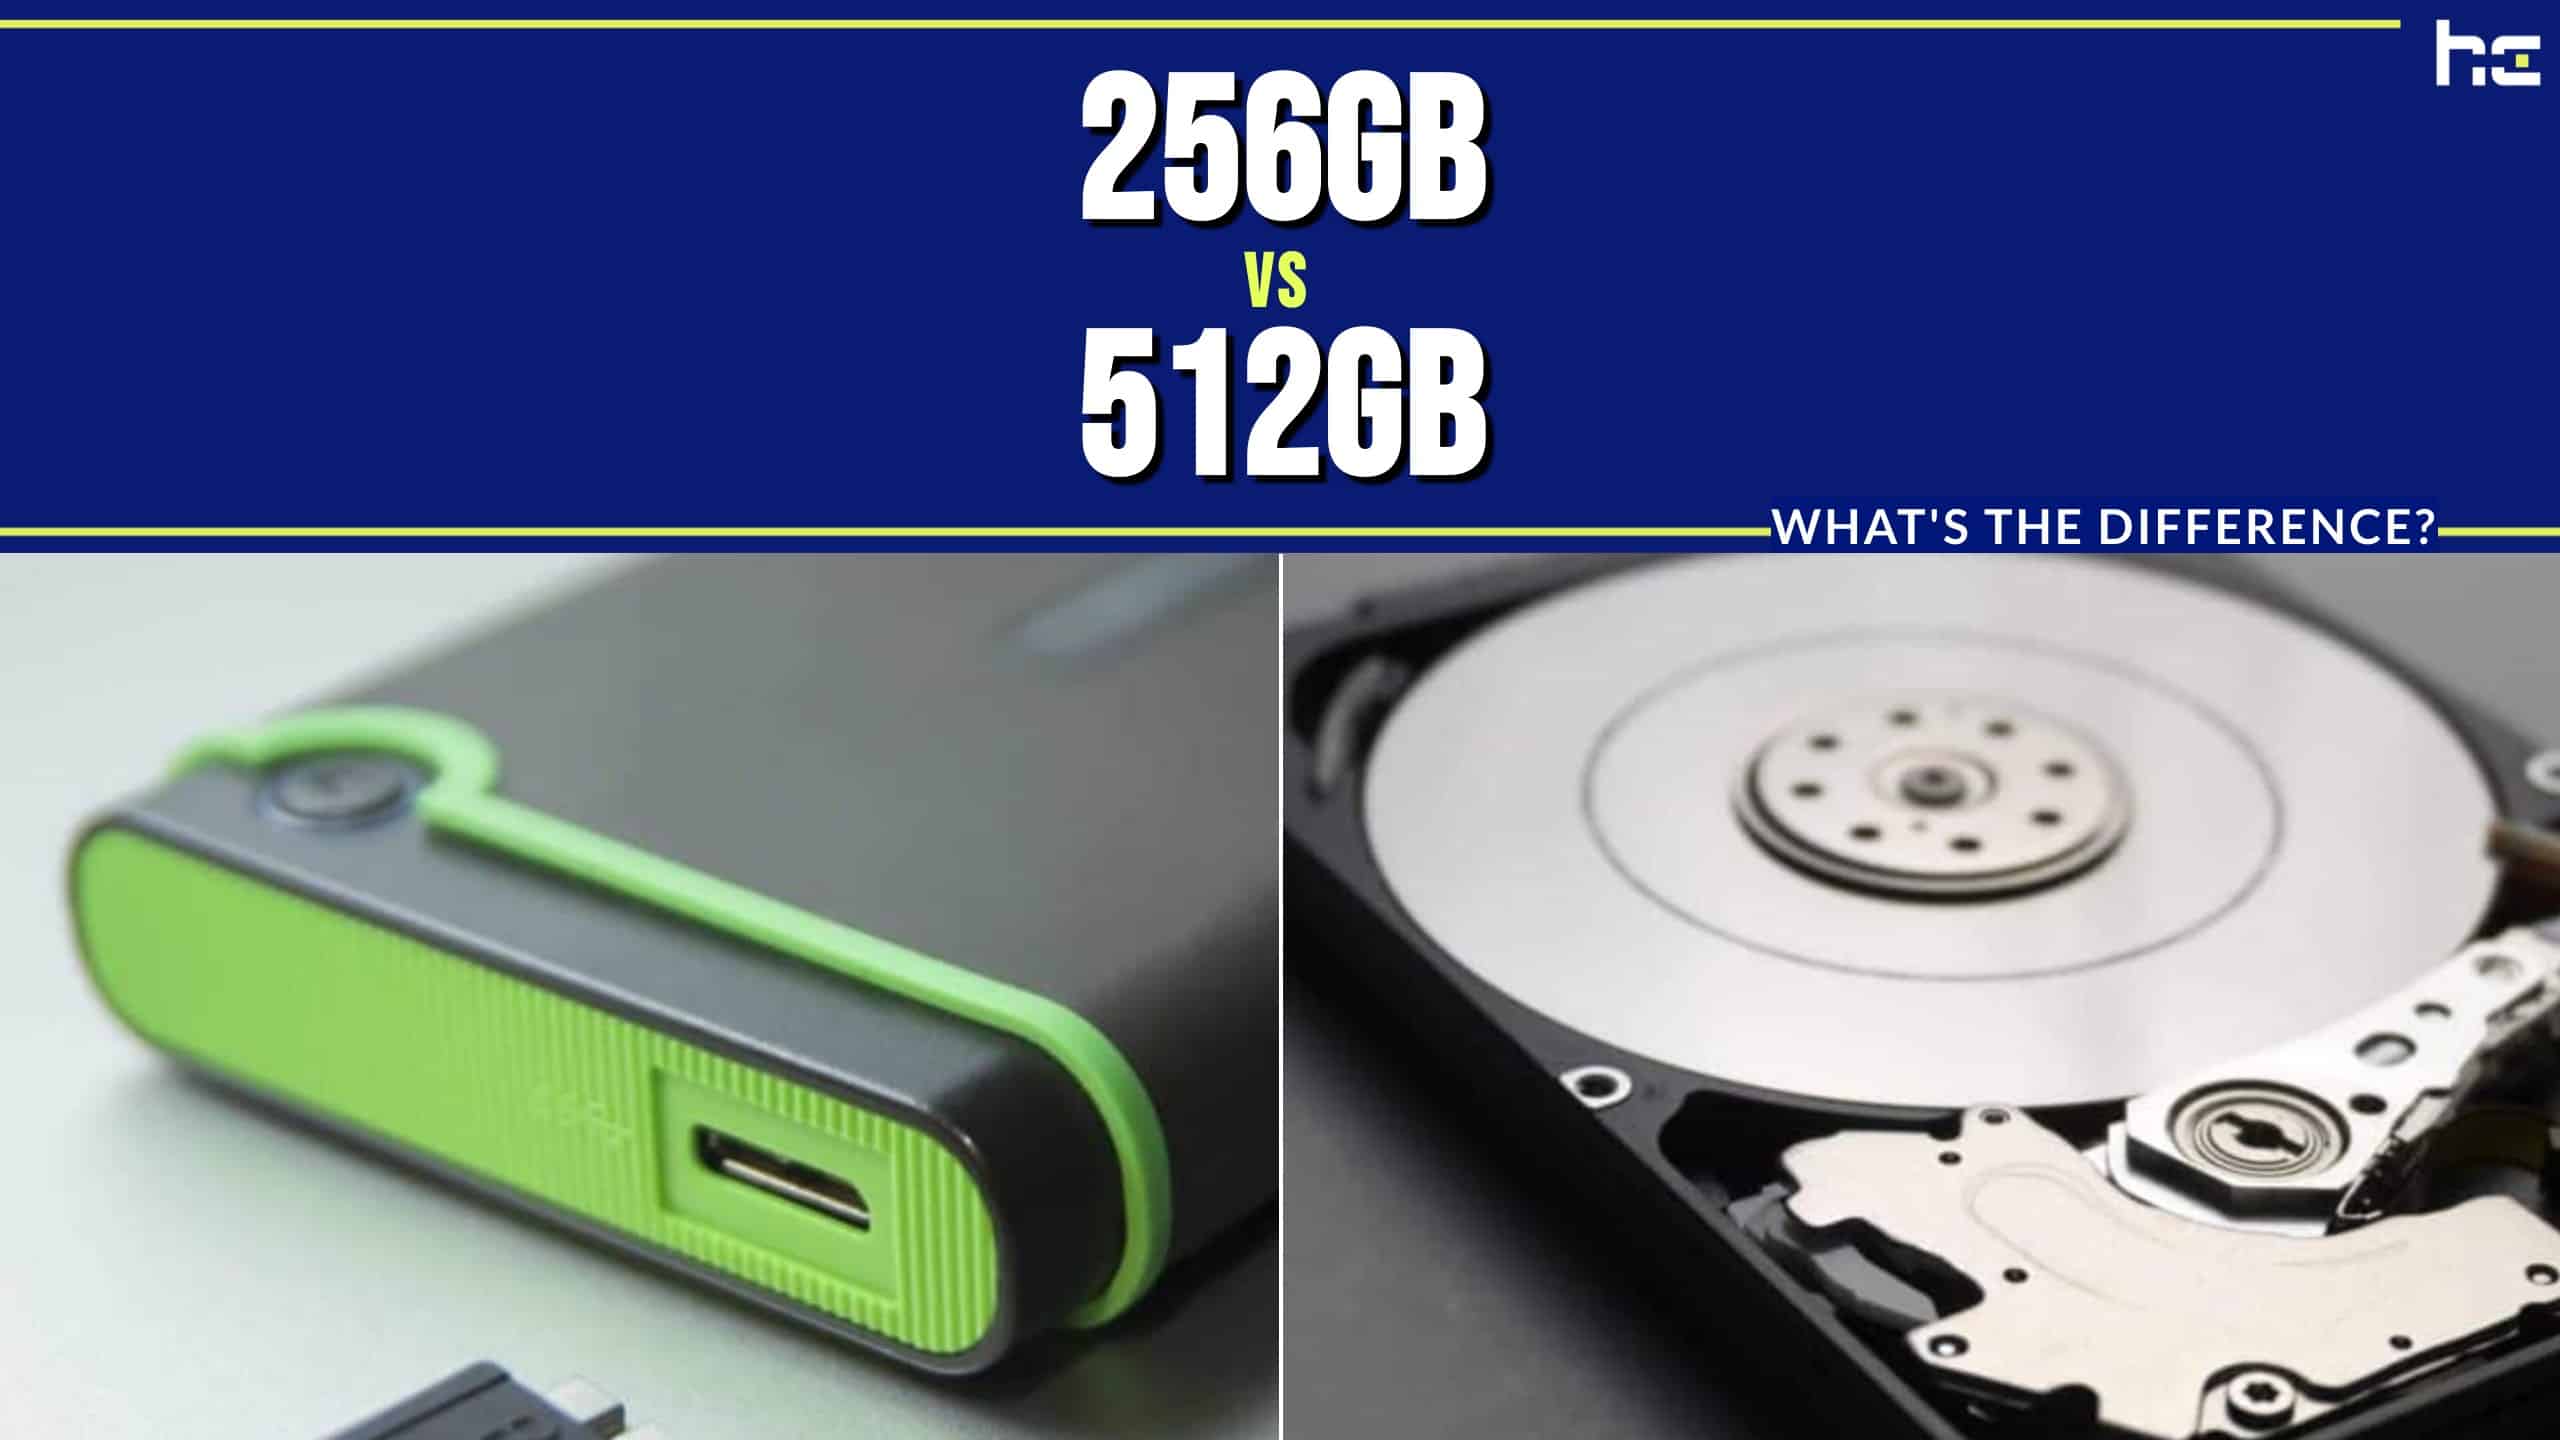 256GB vs 512GB